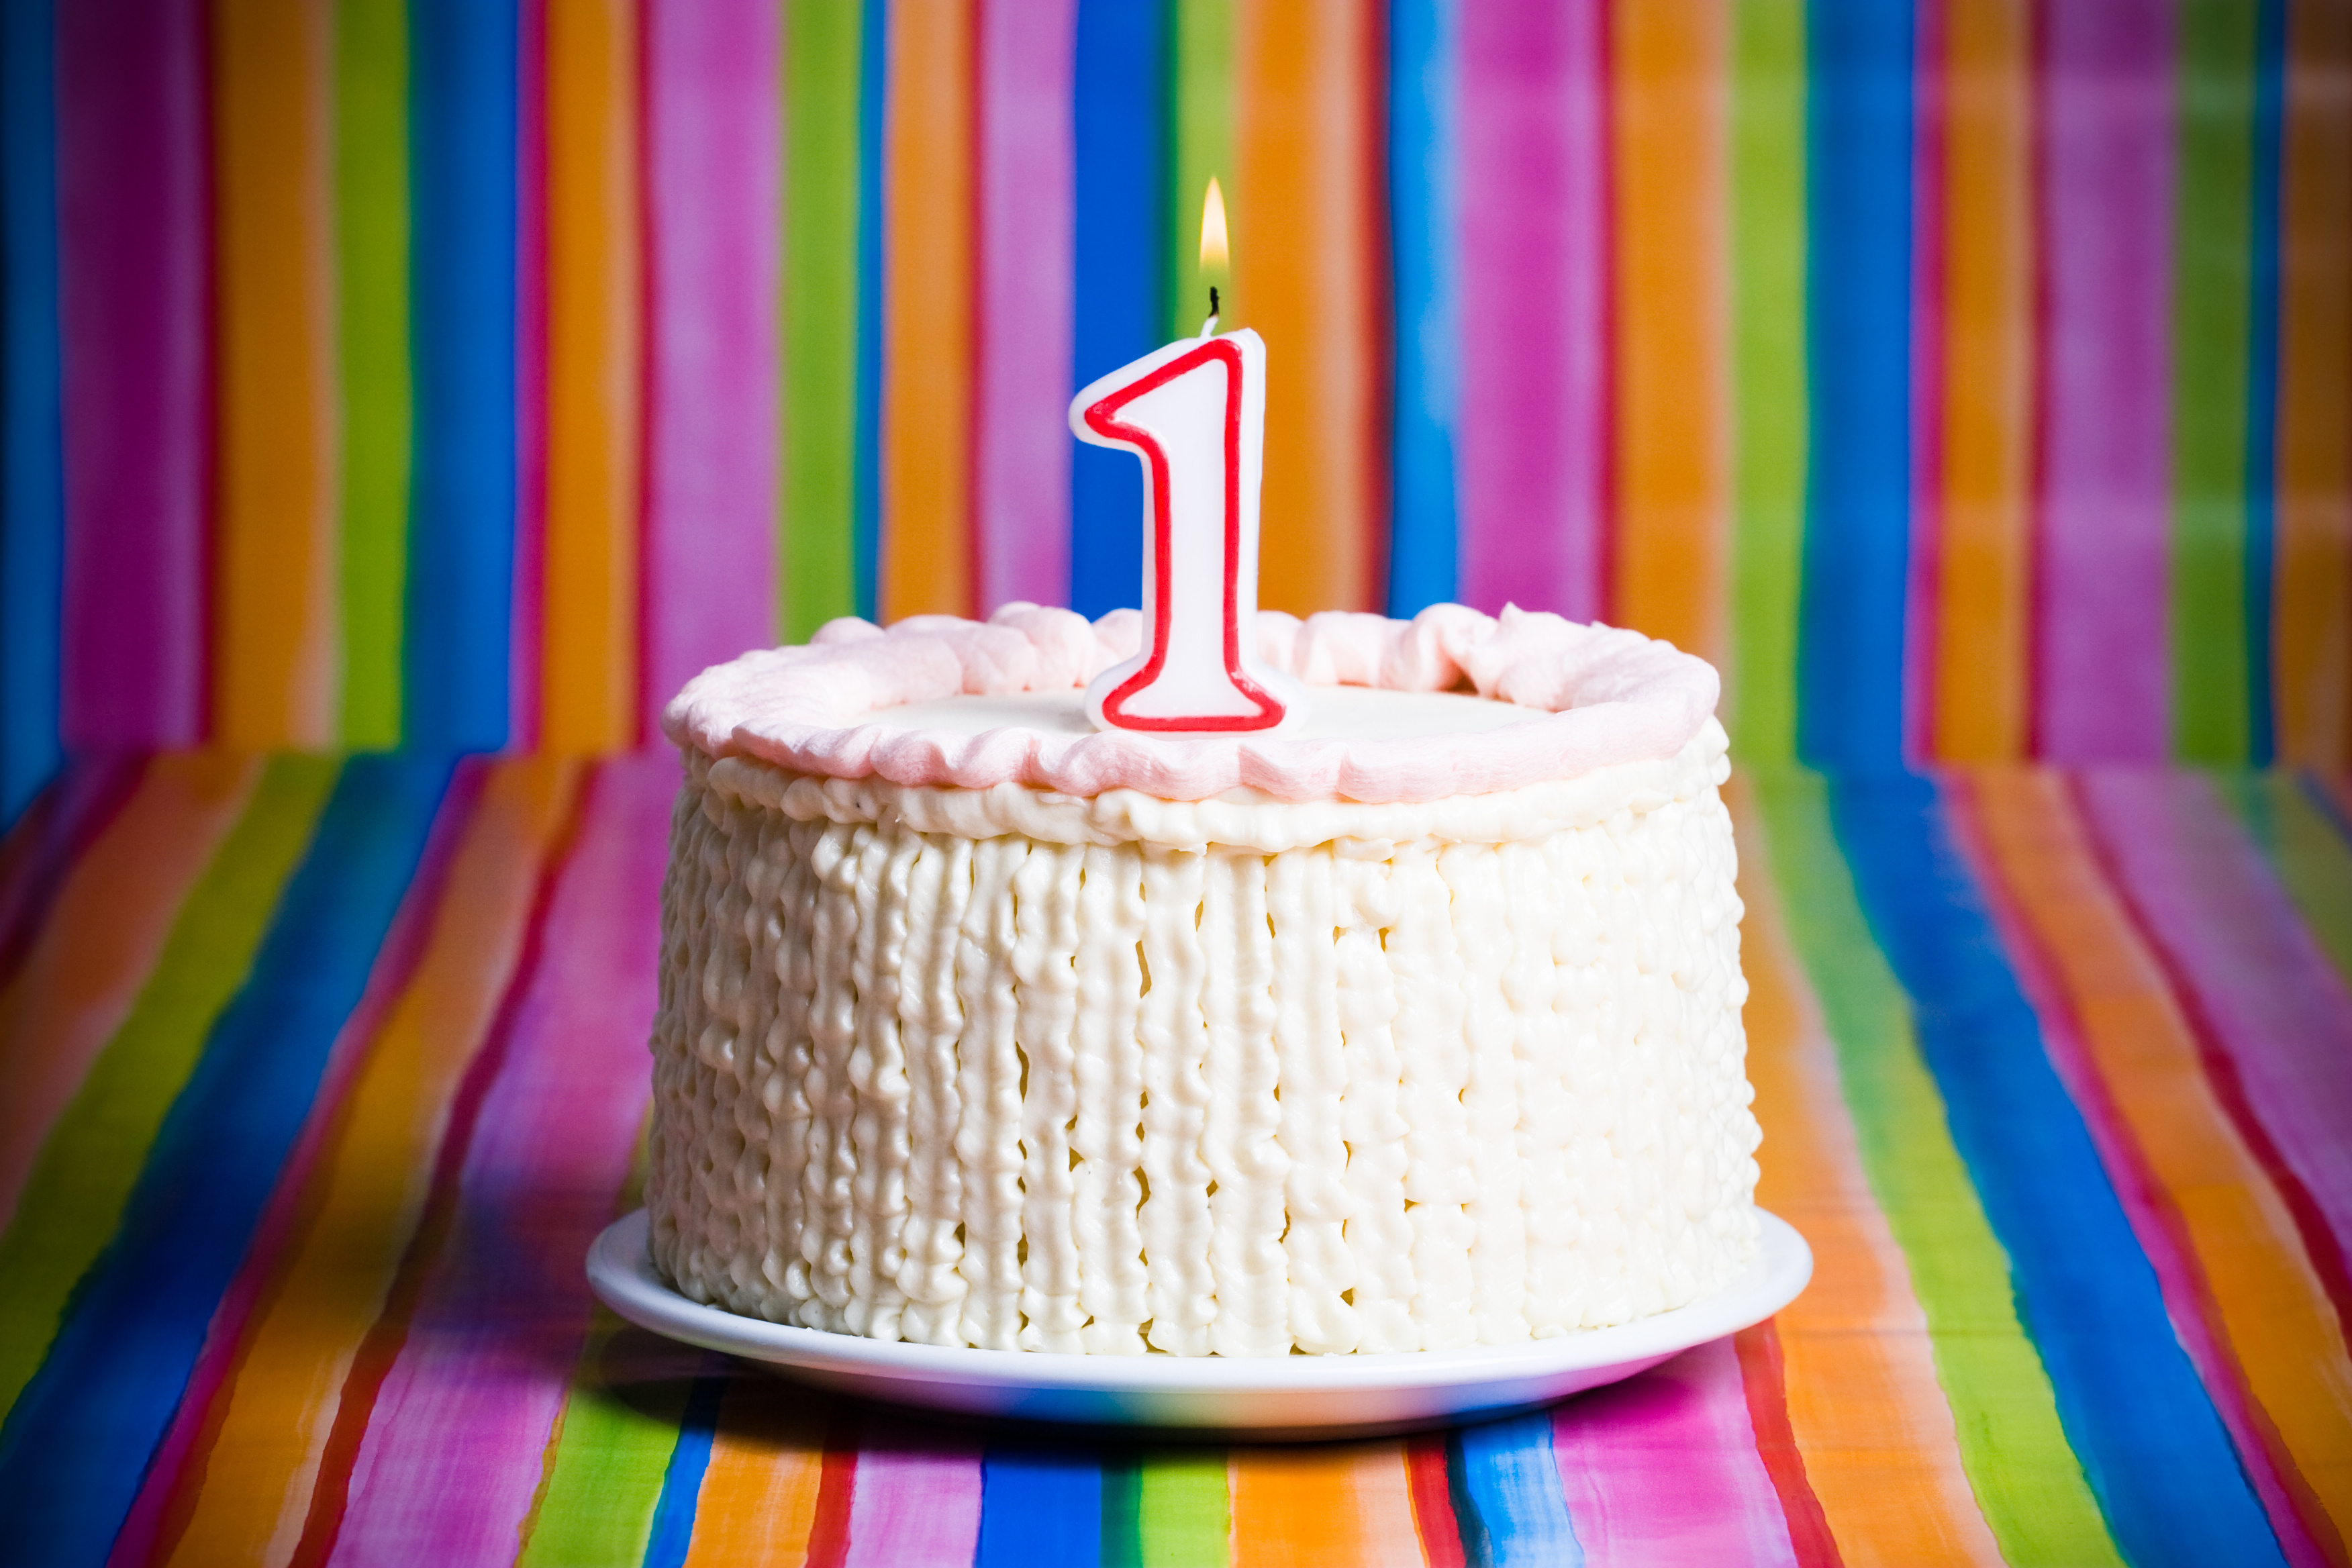 Cake candle. Тортик со свечками. Свечи для торта. Тортик с одной свечкой. Торт со свечкой 1 год.